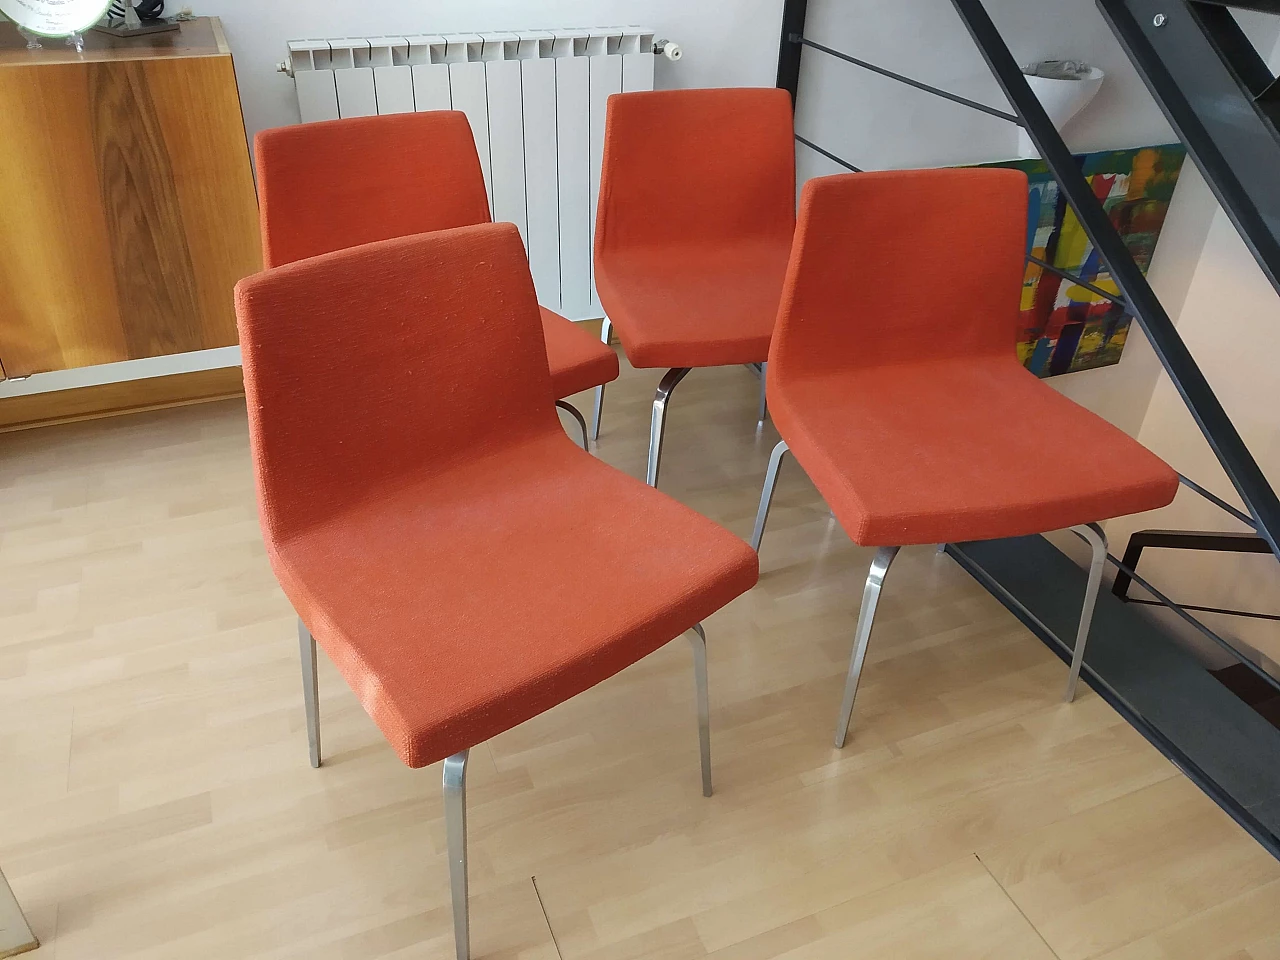 4 Hella Chairs by Mauro Lipparini for MisuraEmme 1477131